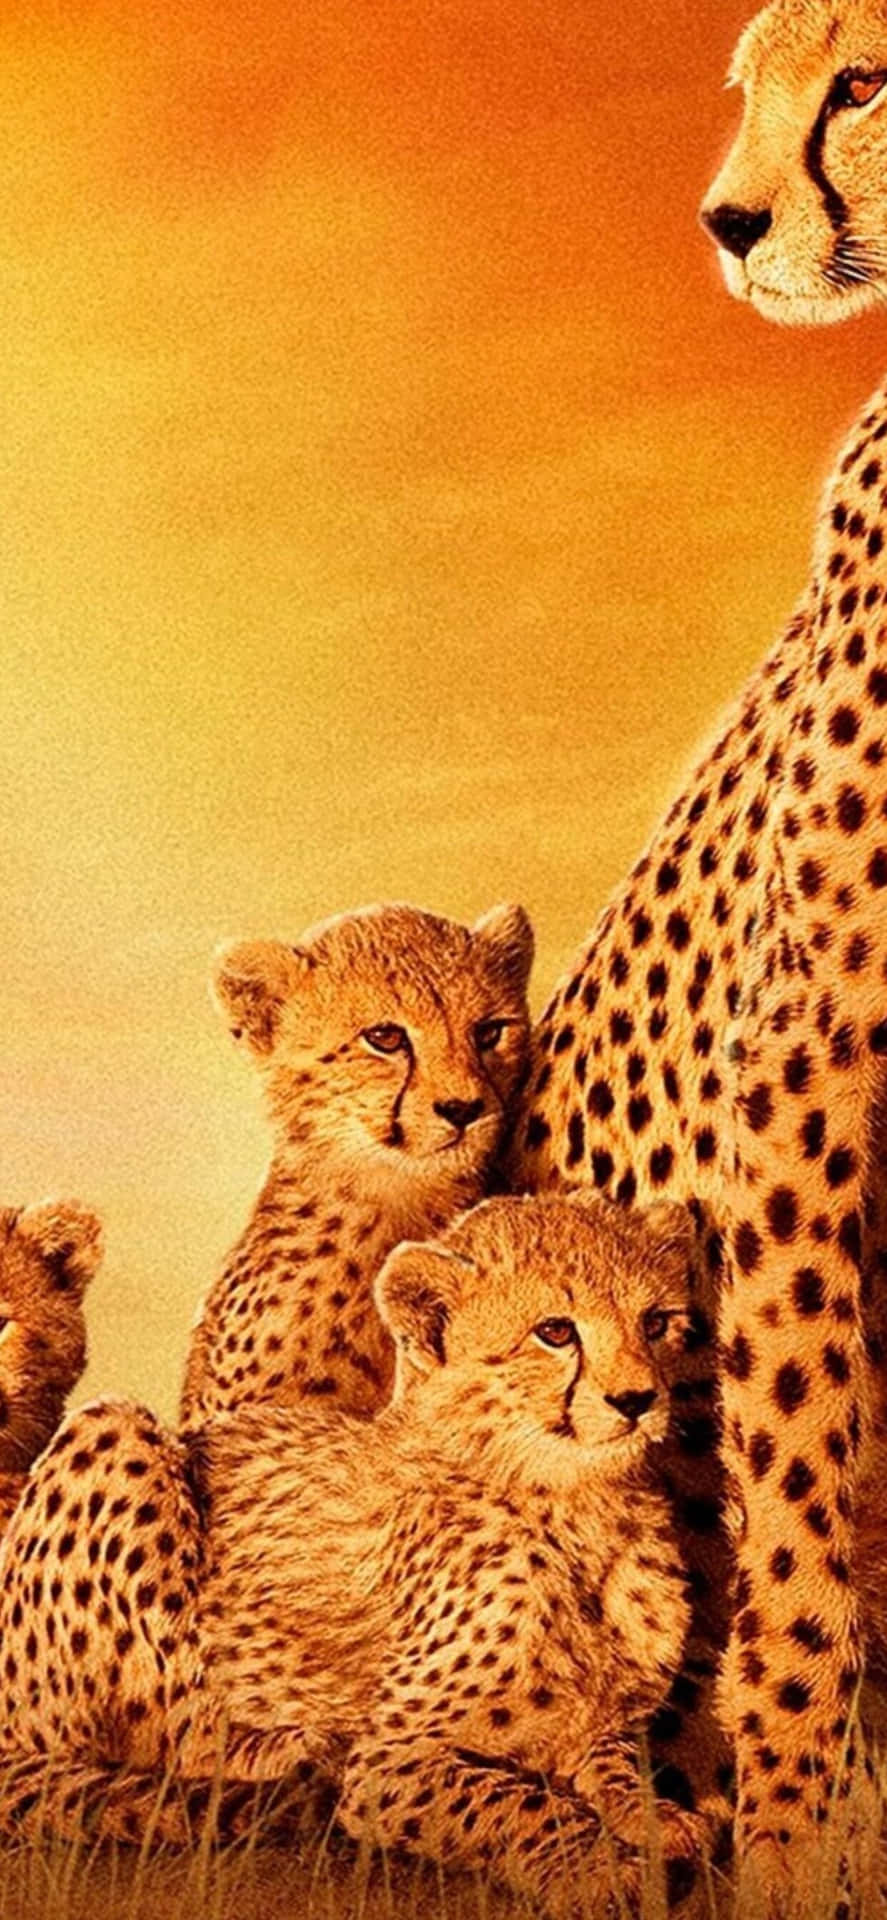 Cheetahfamilie Hintergrundbilder Hd Wallpaper